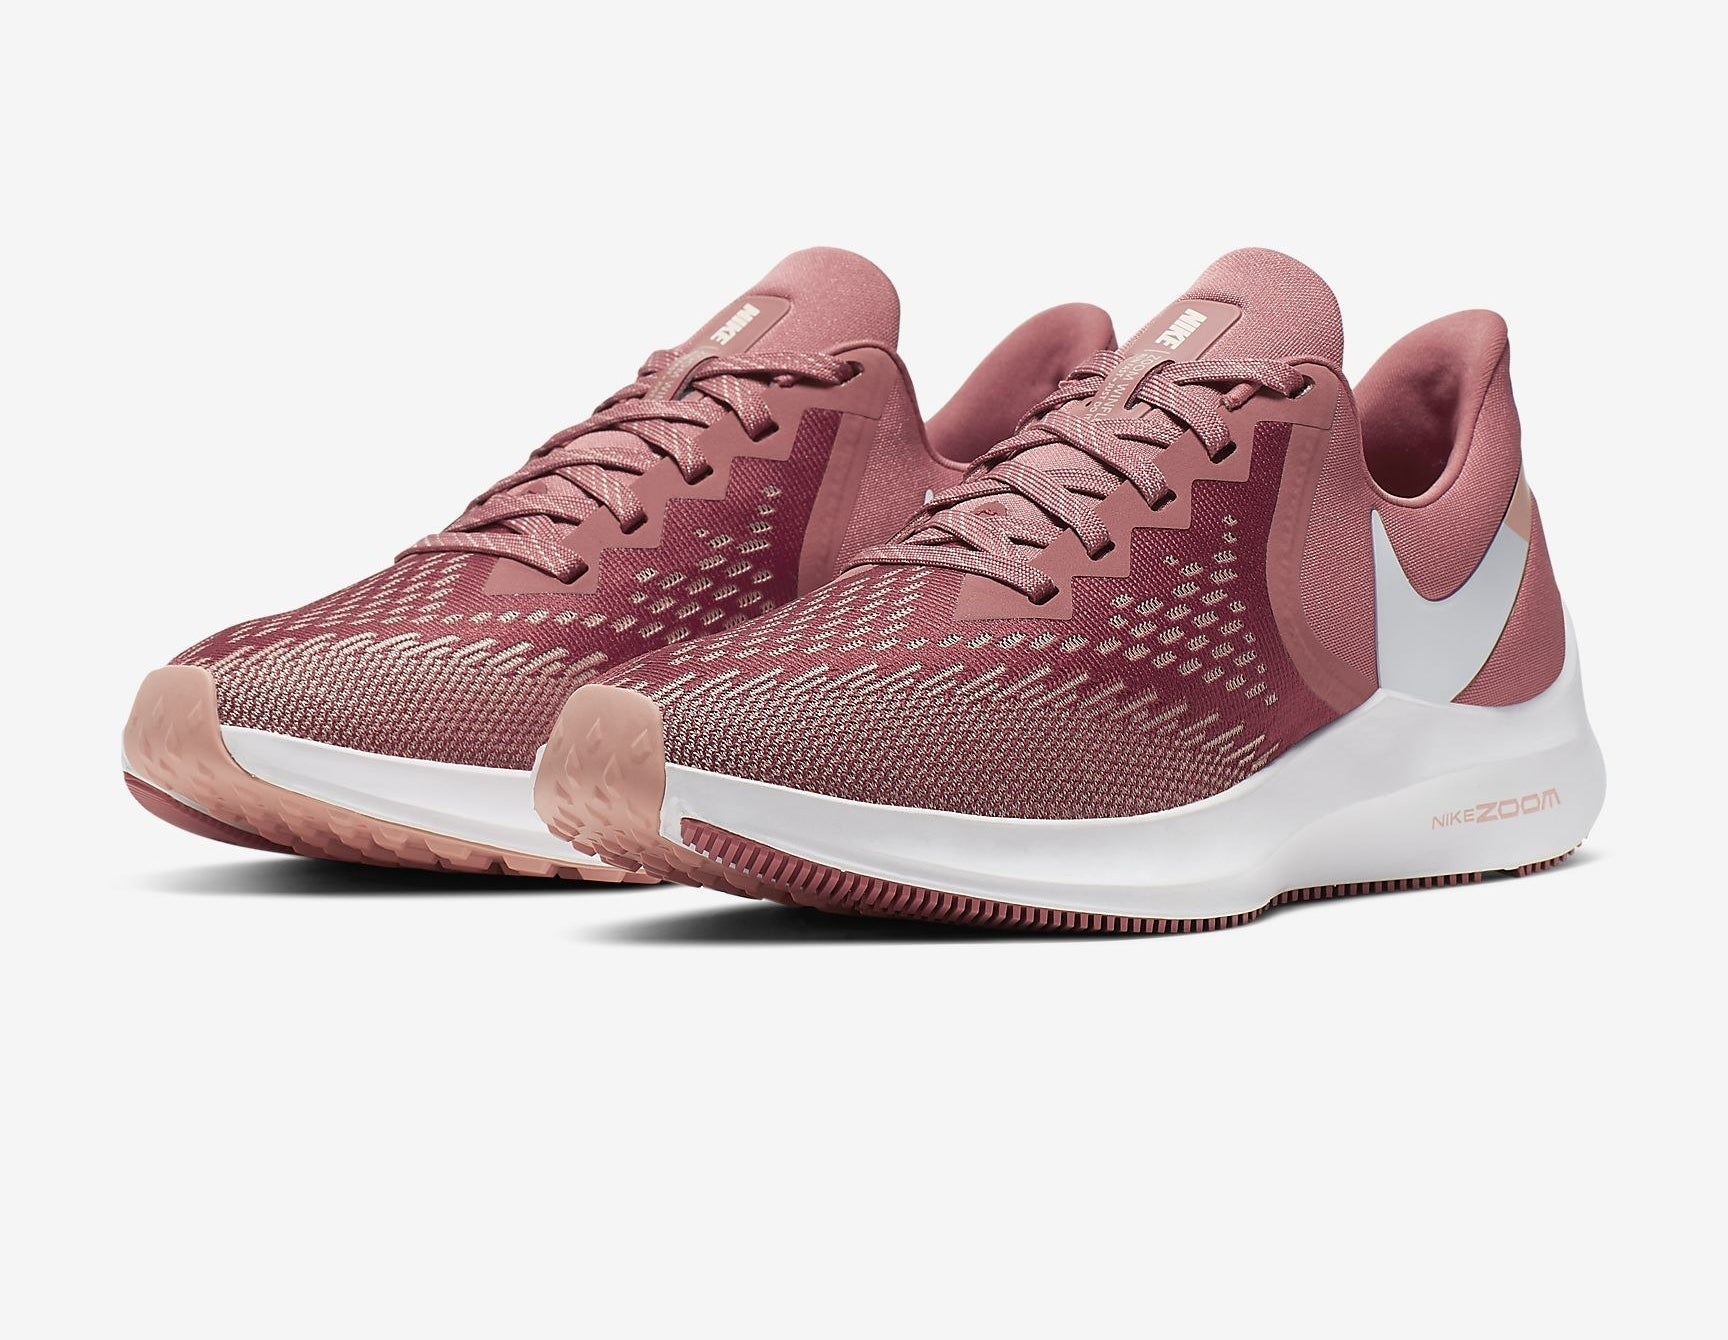 Nike Air Zoom Winflo 6 sneakers in pink